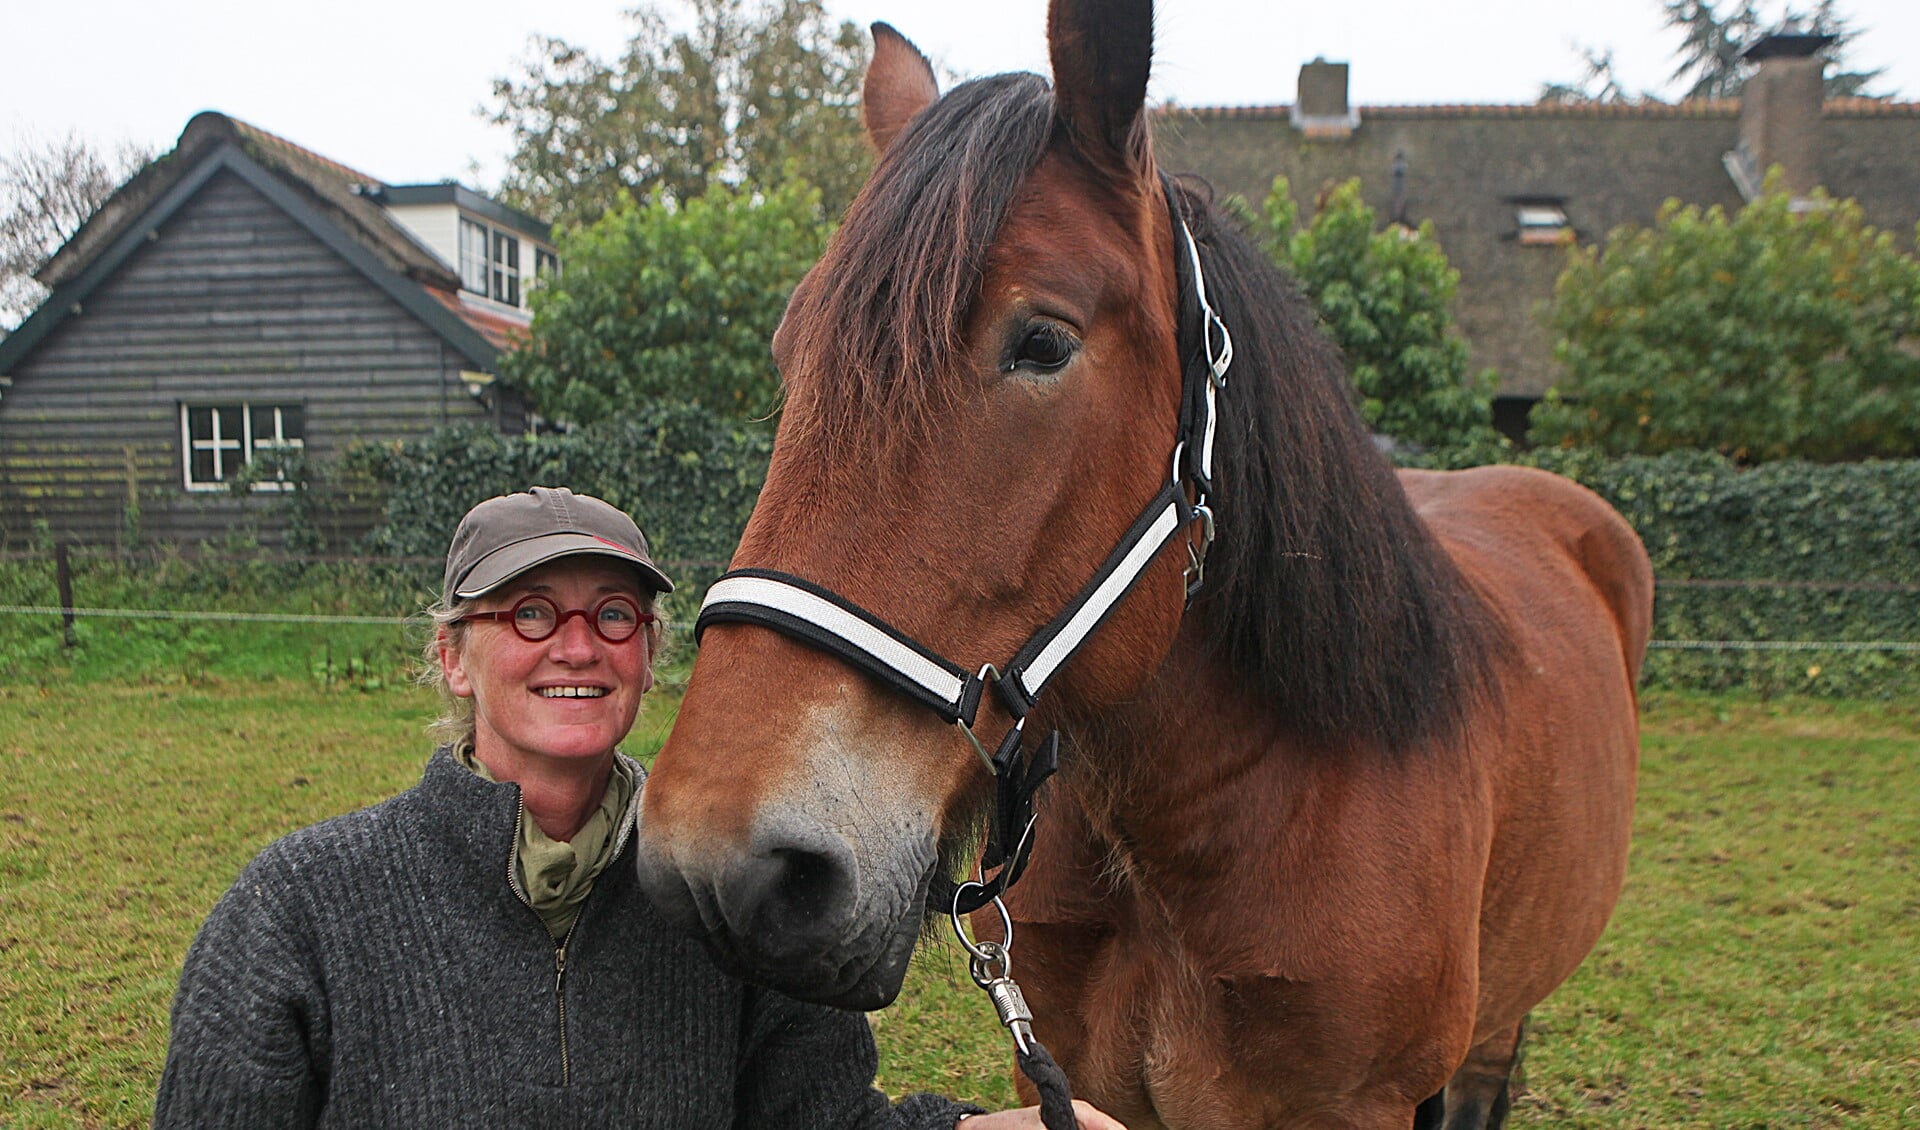 Brenda van Laar is de initiatiefneemster van de paardentram, die nu in opdracht van de gemeente als proef gaat rijden.